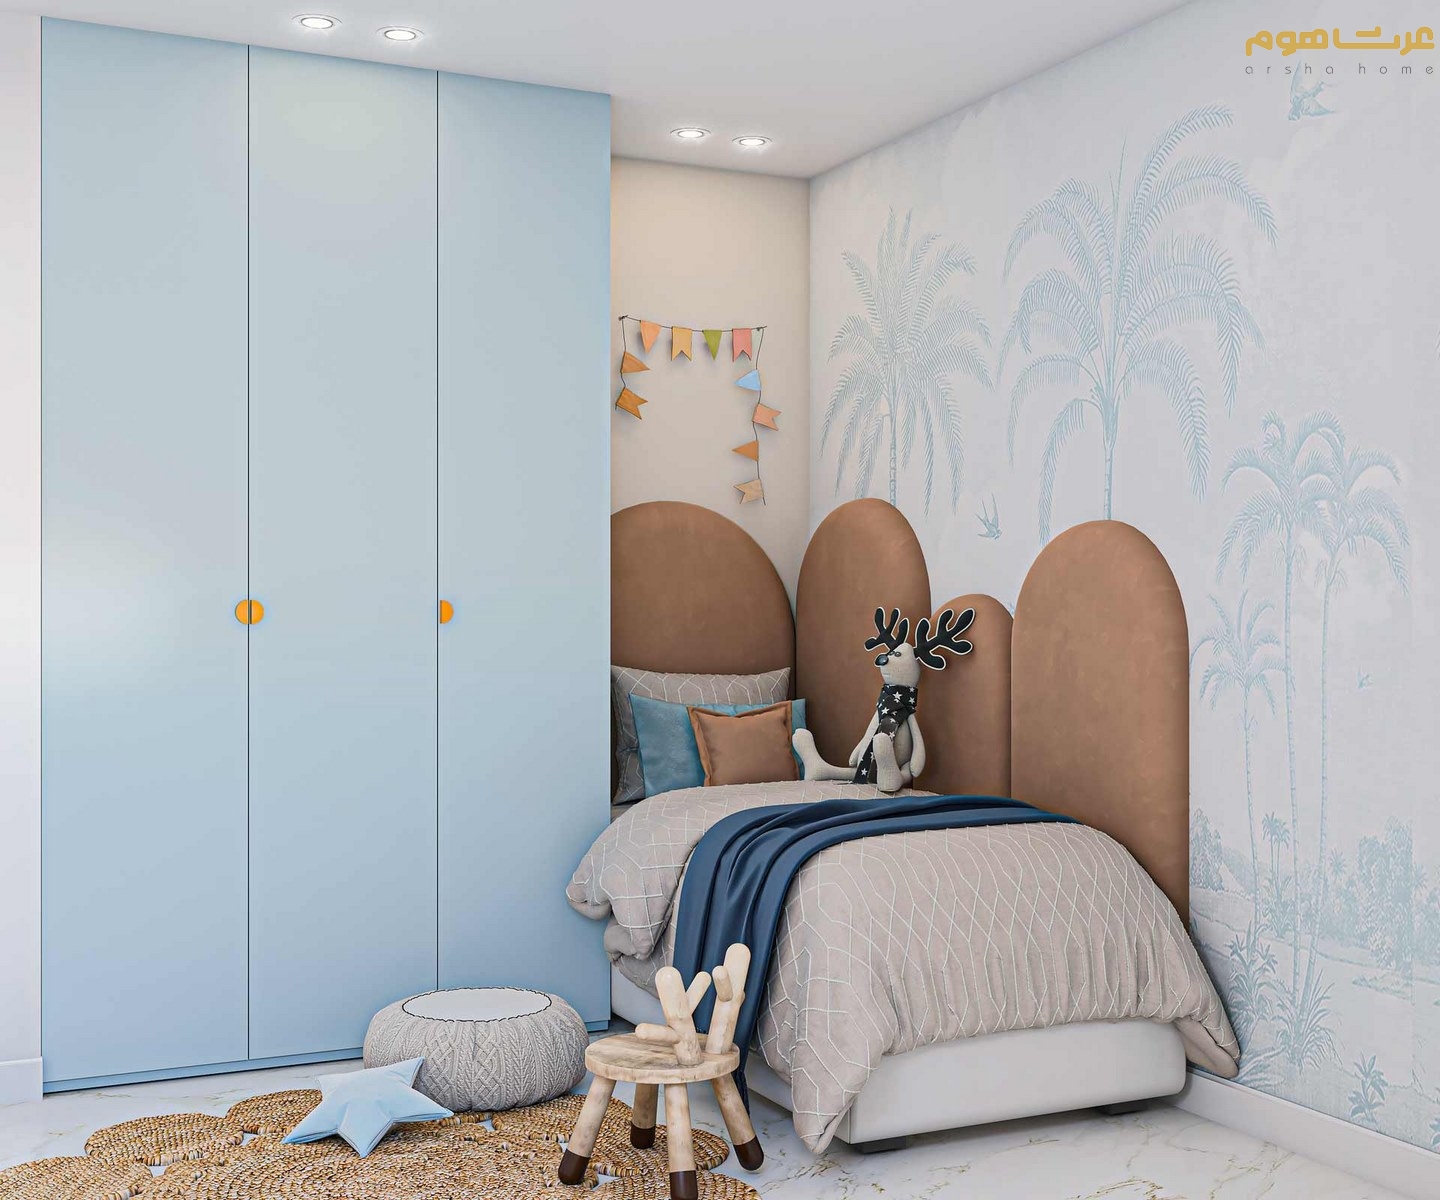 طراحی داخلی تخت وکمد اتاق کودک به سبک مدرن دربند